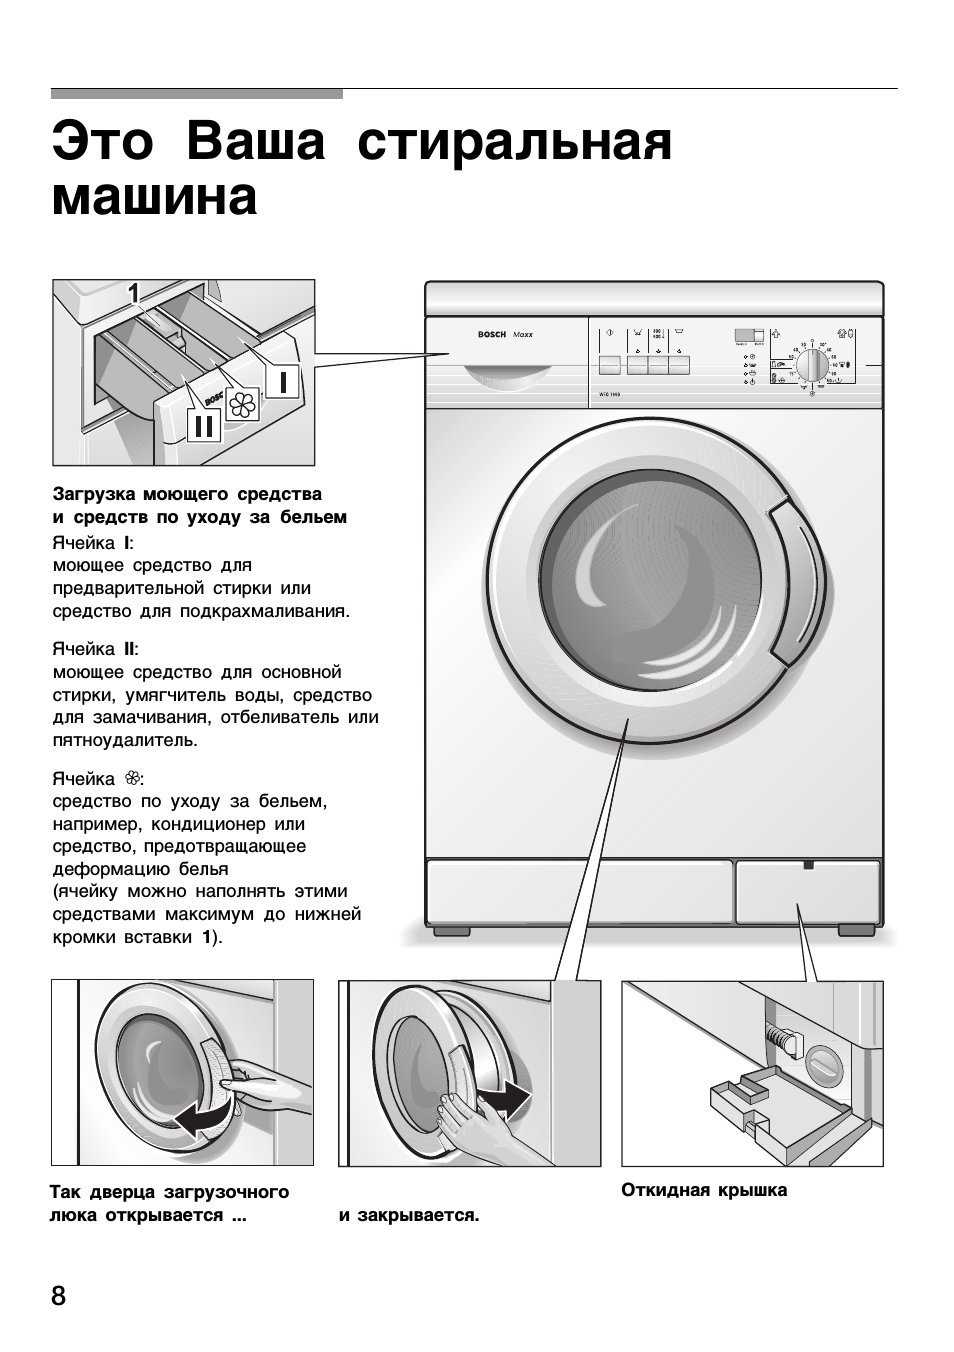 Как очистить стиральную машину-автомат от накипи и грязи: описание быстрых и эффективных способов удаления